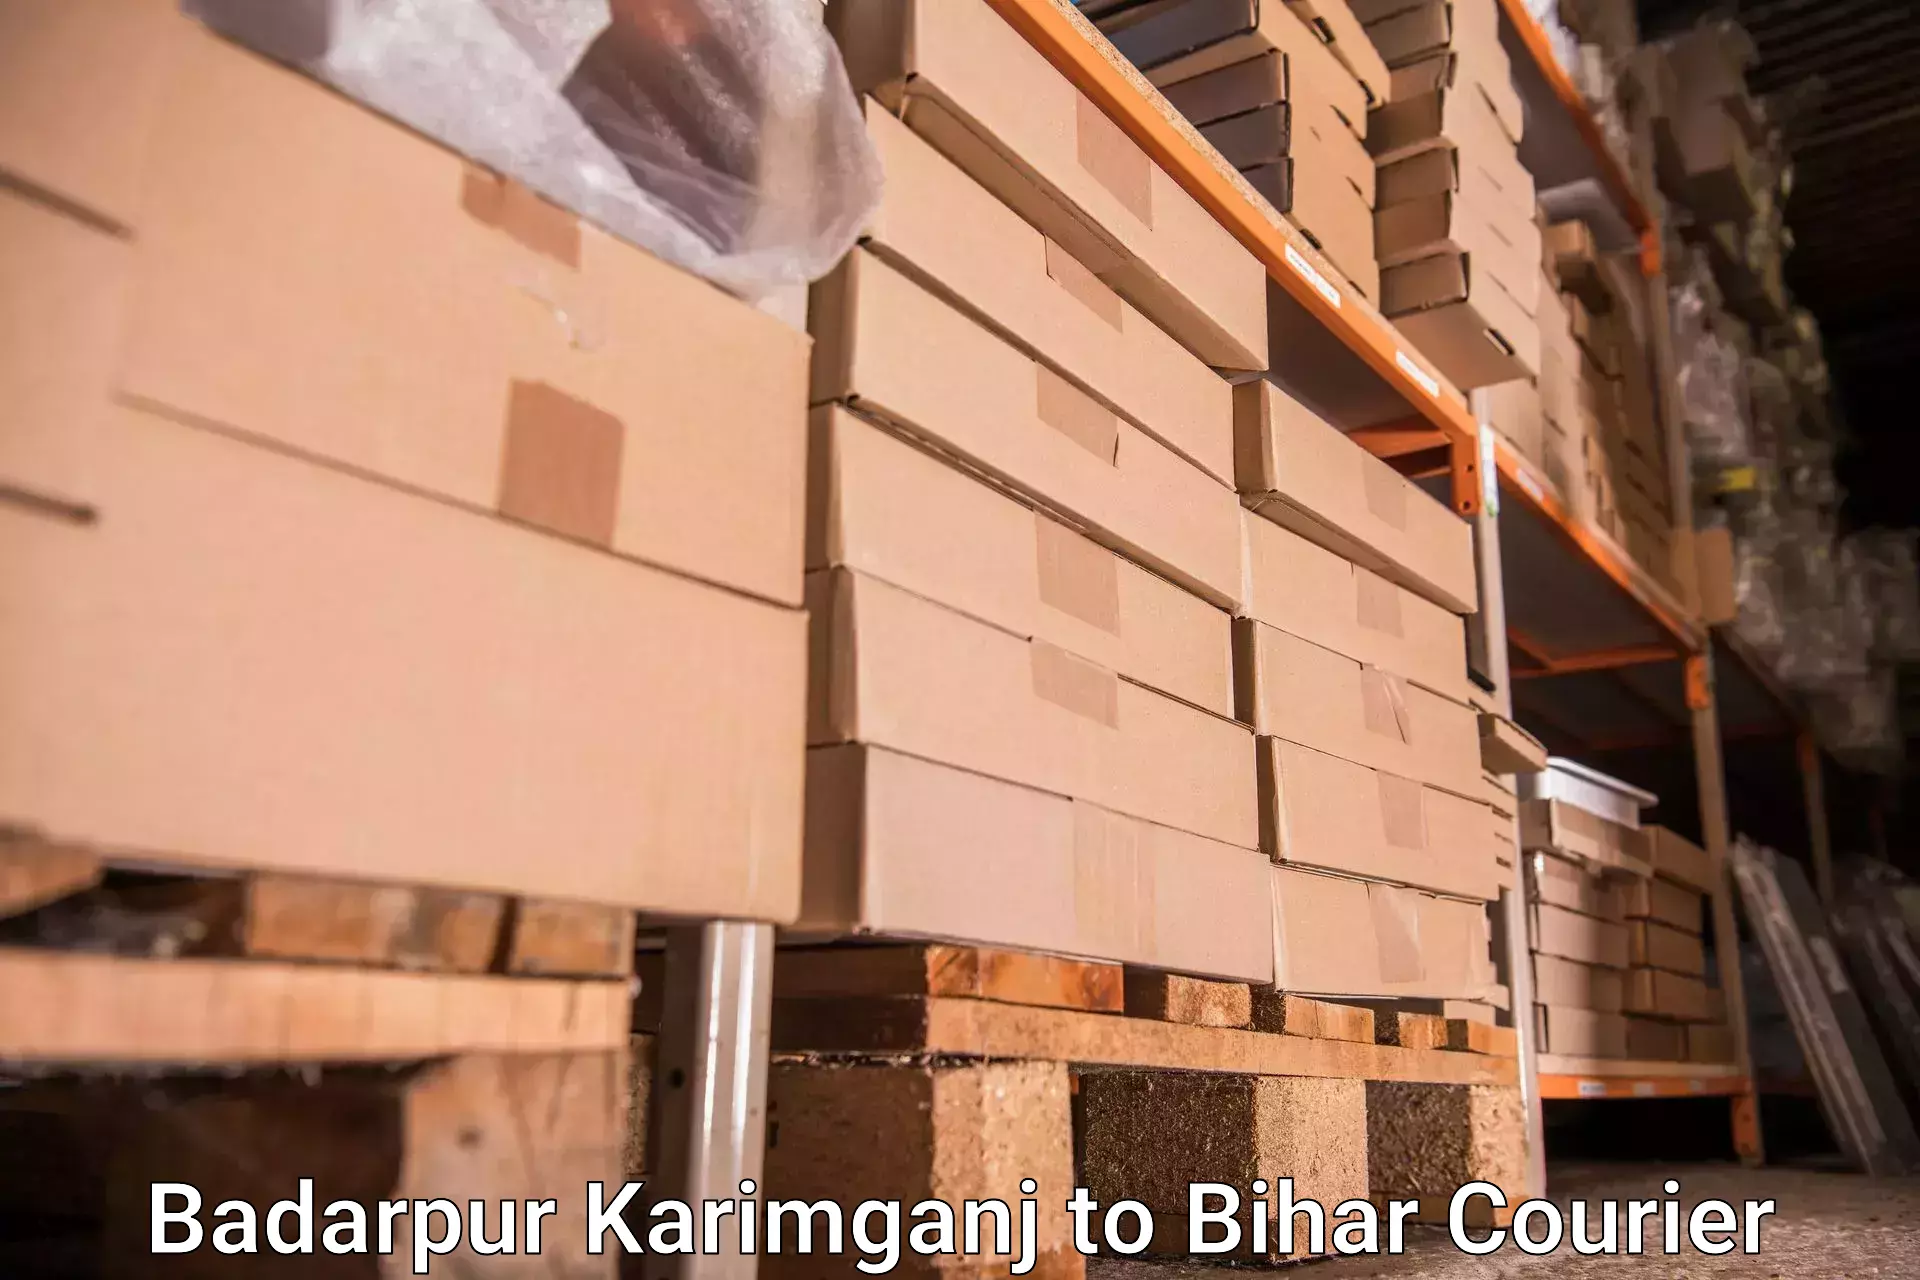 Hassle-free luggage shipping in Badarpur Karimganj to Arrah